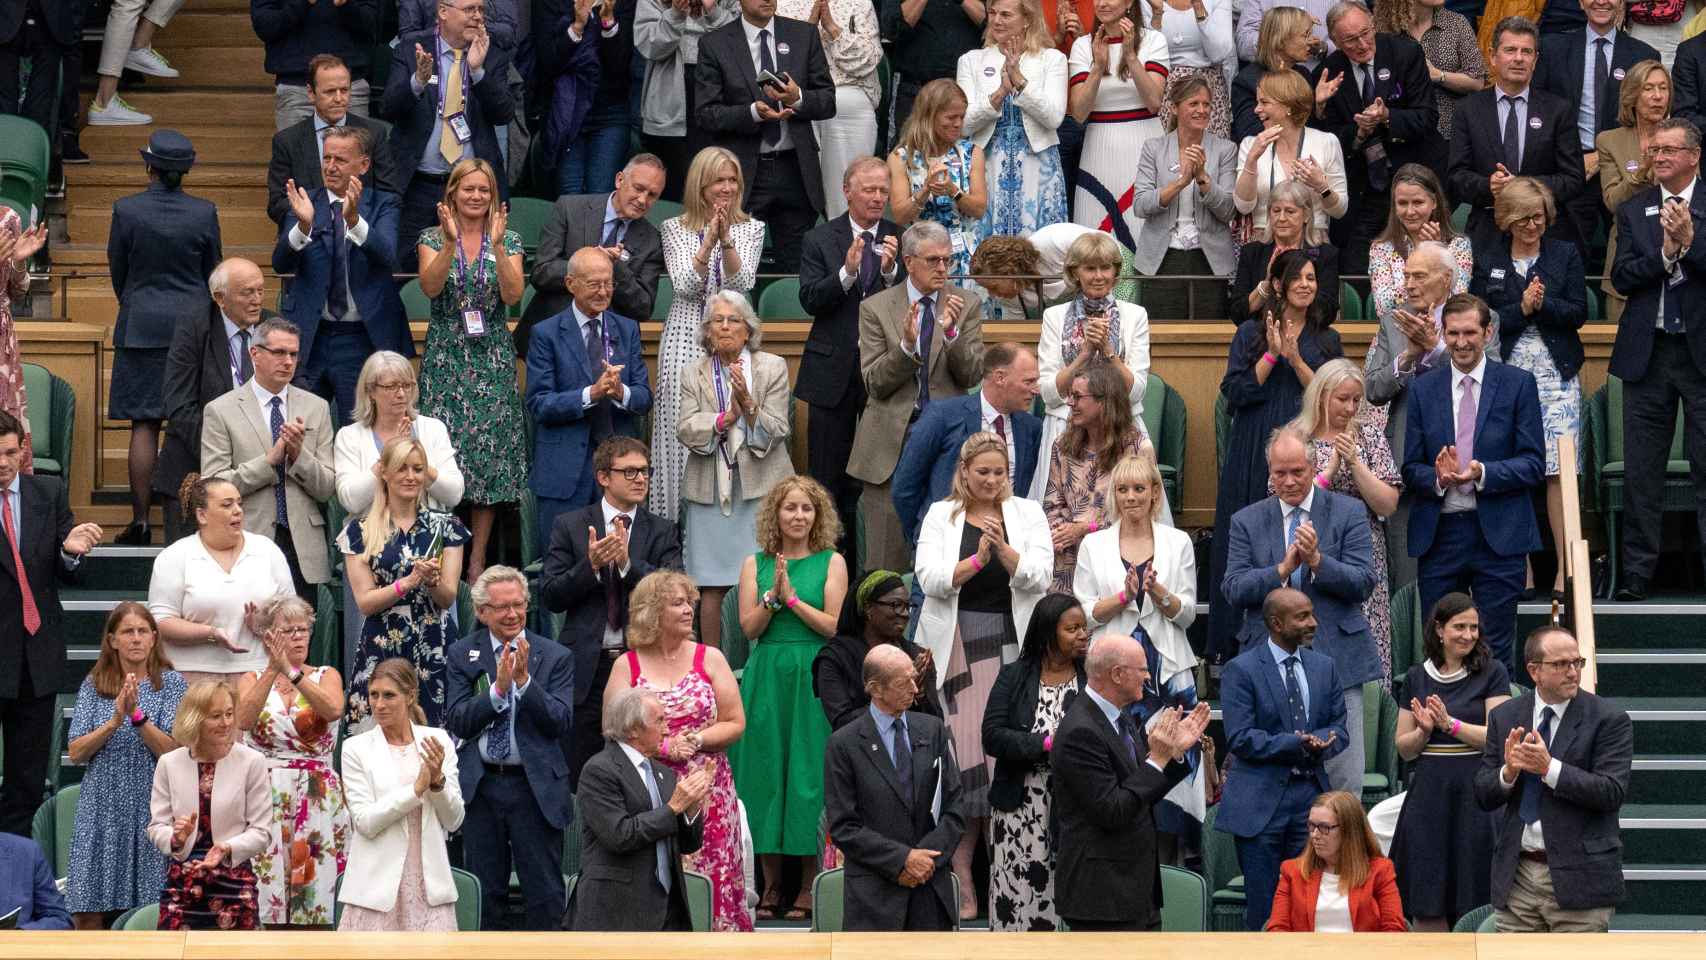 Los espectadores de Wimbledon ovacionan a la profesara Sarah Gilbert, cocreadora de la vacuna de Astrazeneca